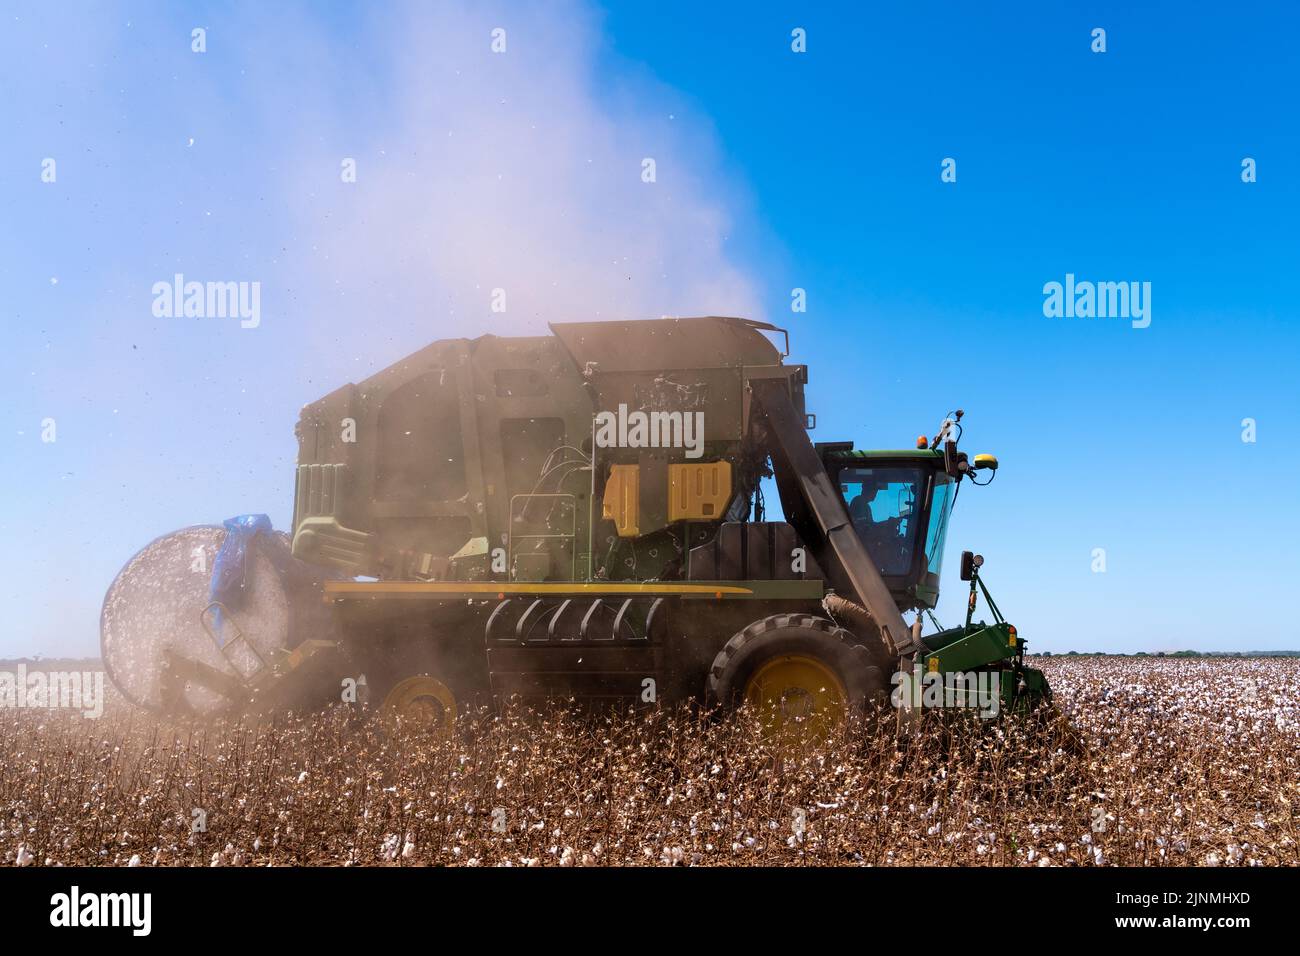 Mato Grosso, Brasilien, Juli 18 2022: Moderne Harvestermaschine, die am Sommertag bei der Baumwollernte arbeitet. Mato Grosso, Brasilien. Konzept der Landwirtschaft. Stockfoto